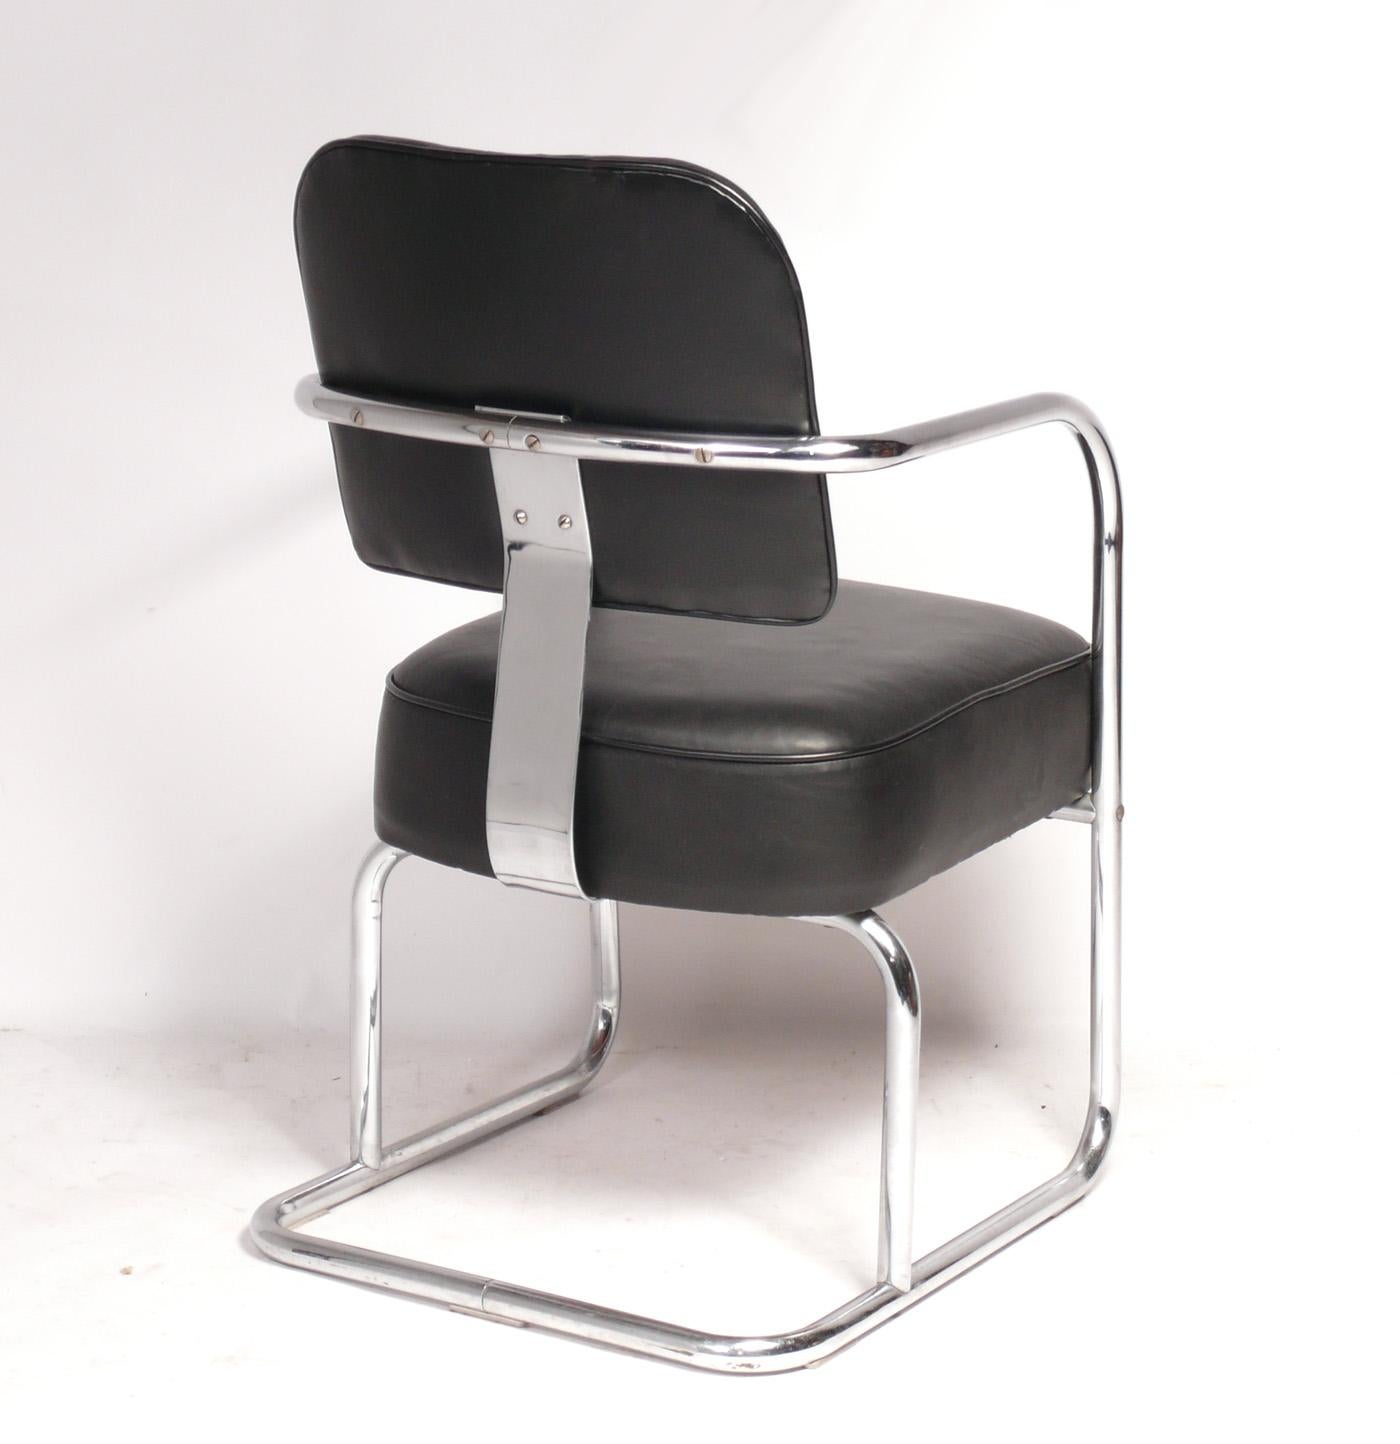 Chaises de salle à manger Art déco épurées, conçues par Wolfgang Hoffmann pour Howell, États-Unis, vers les années 1930. Cadre en métal chromé et revêtement en cuir noir. Veuillez consulter nos autres annonces 1stdibs pour la table à manger Hoffmann